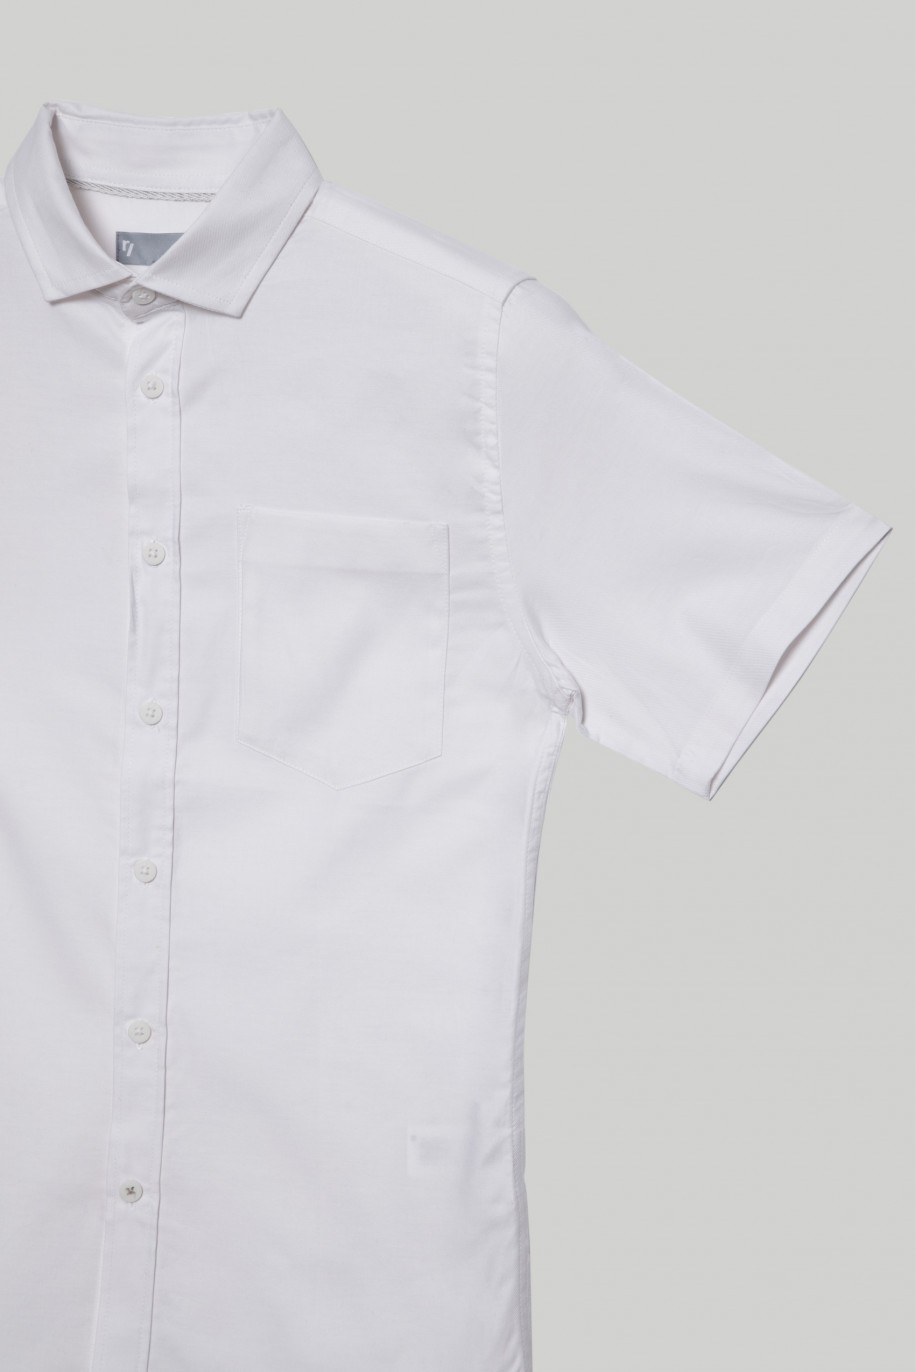 Biała klasyczna koszula z krótkim rękawem dla chłopaka - 29274